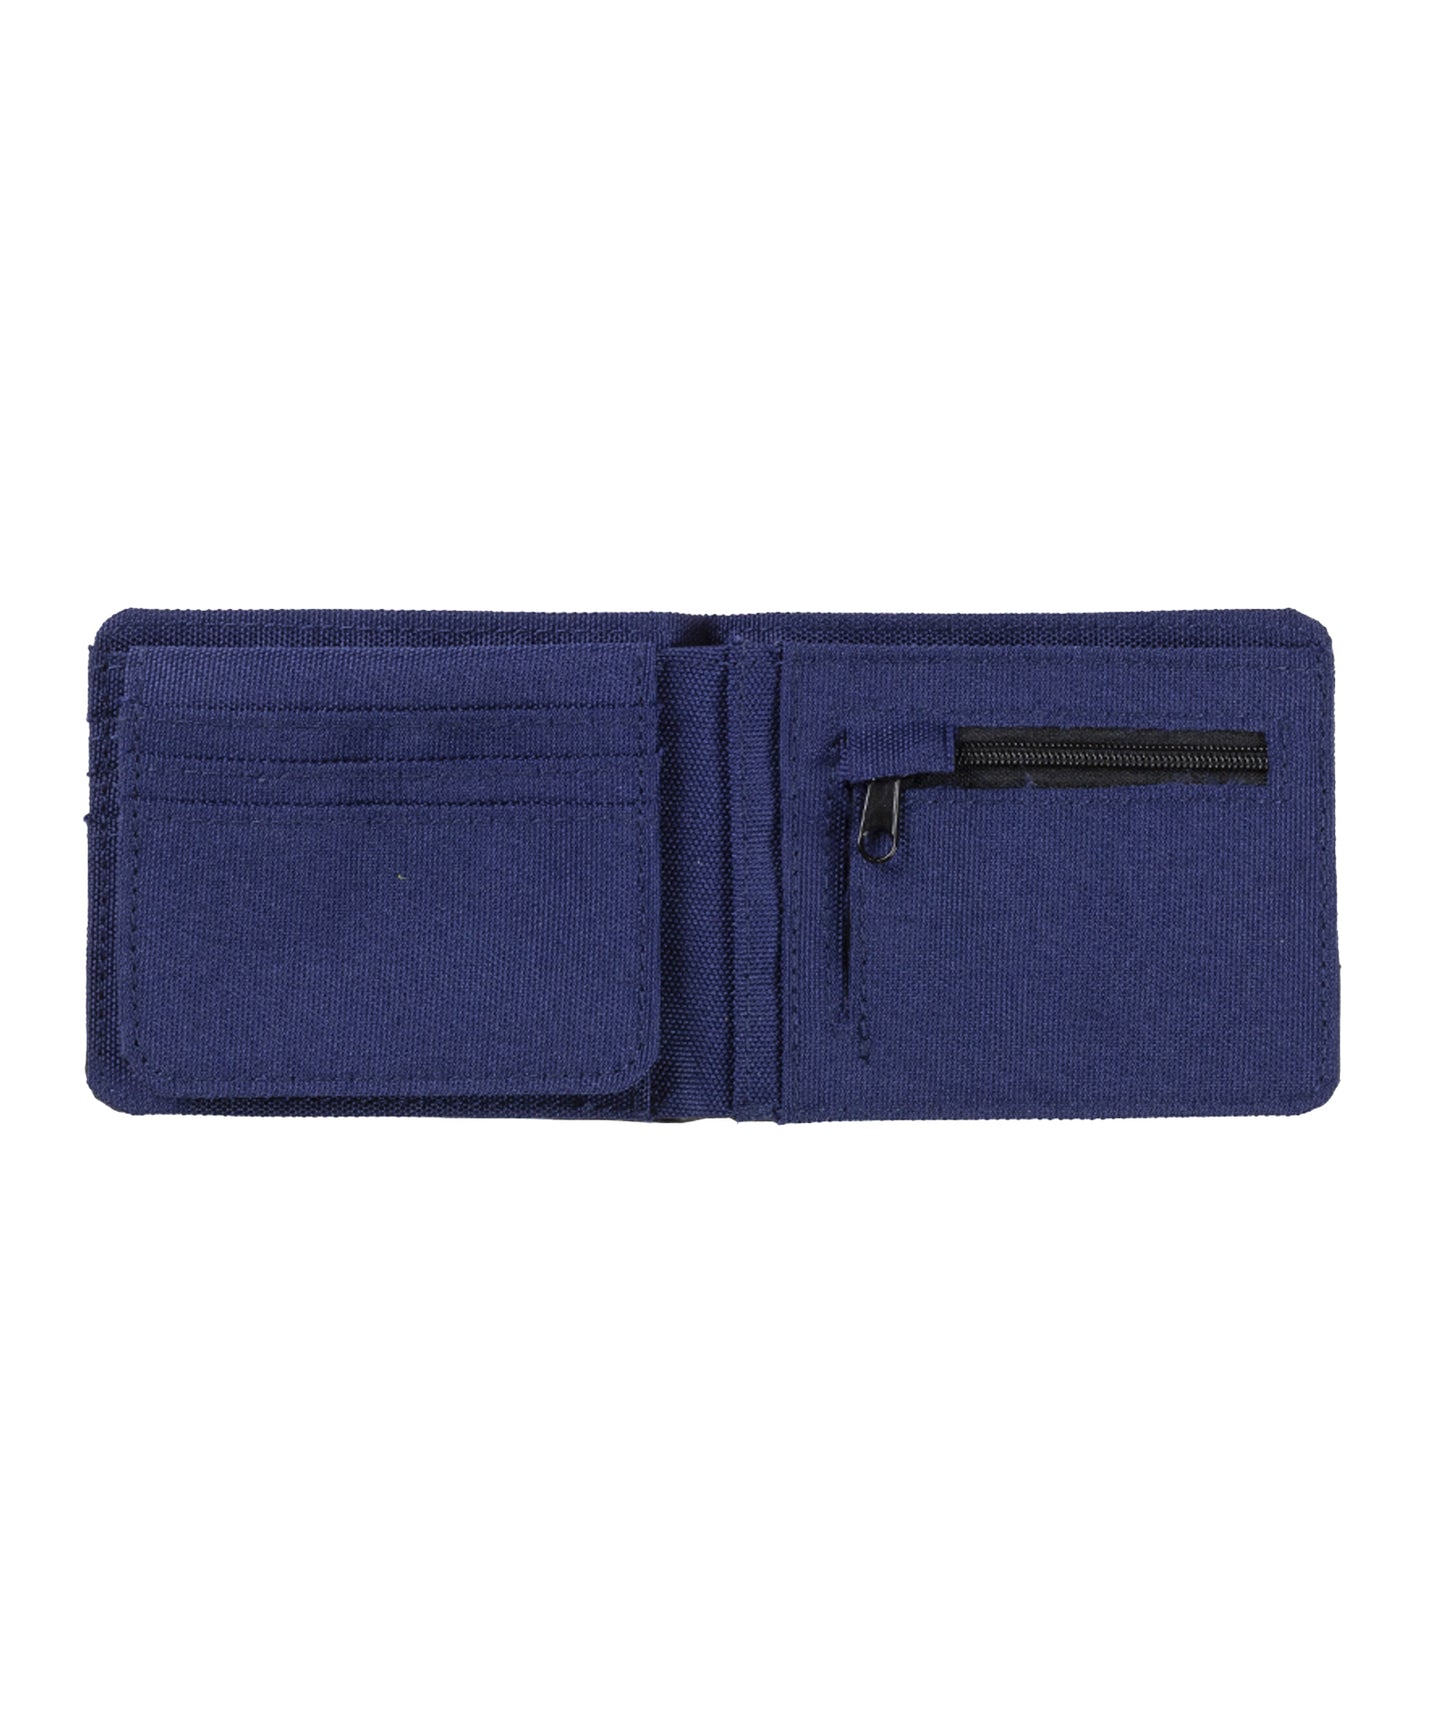 hydroponic cartera clasica de dos pliegues de ropa y piel sintética, color azul y negro y logo metálico hydroponic en el frente